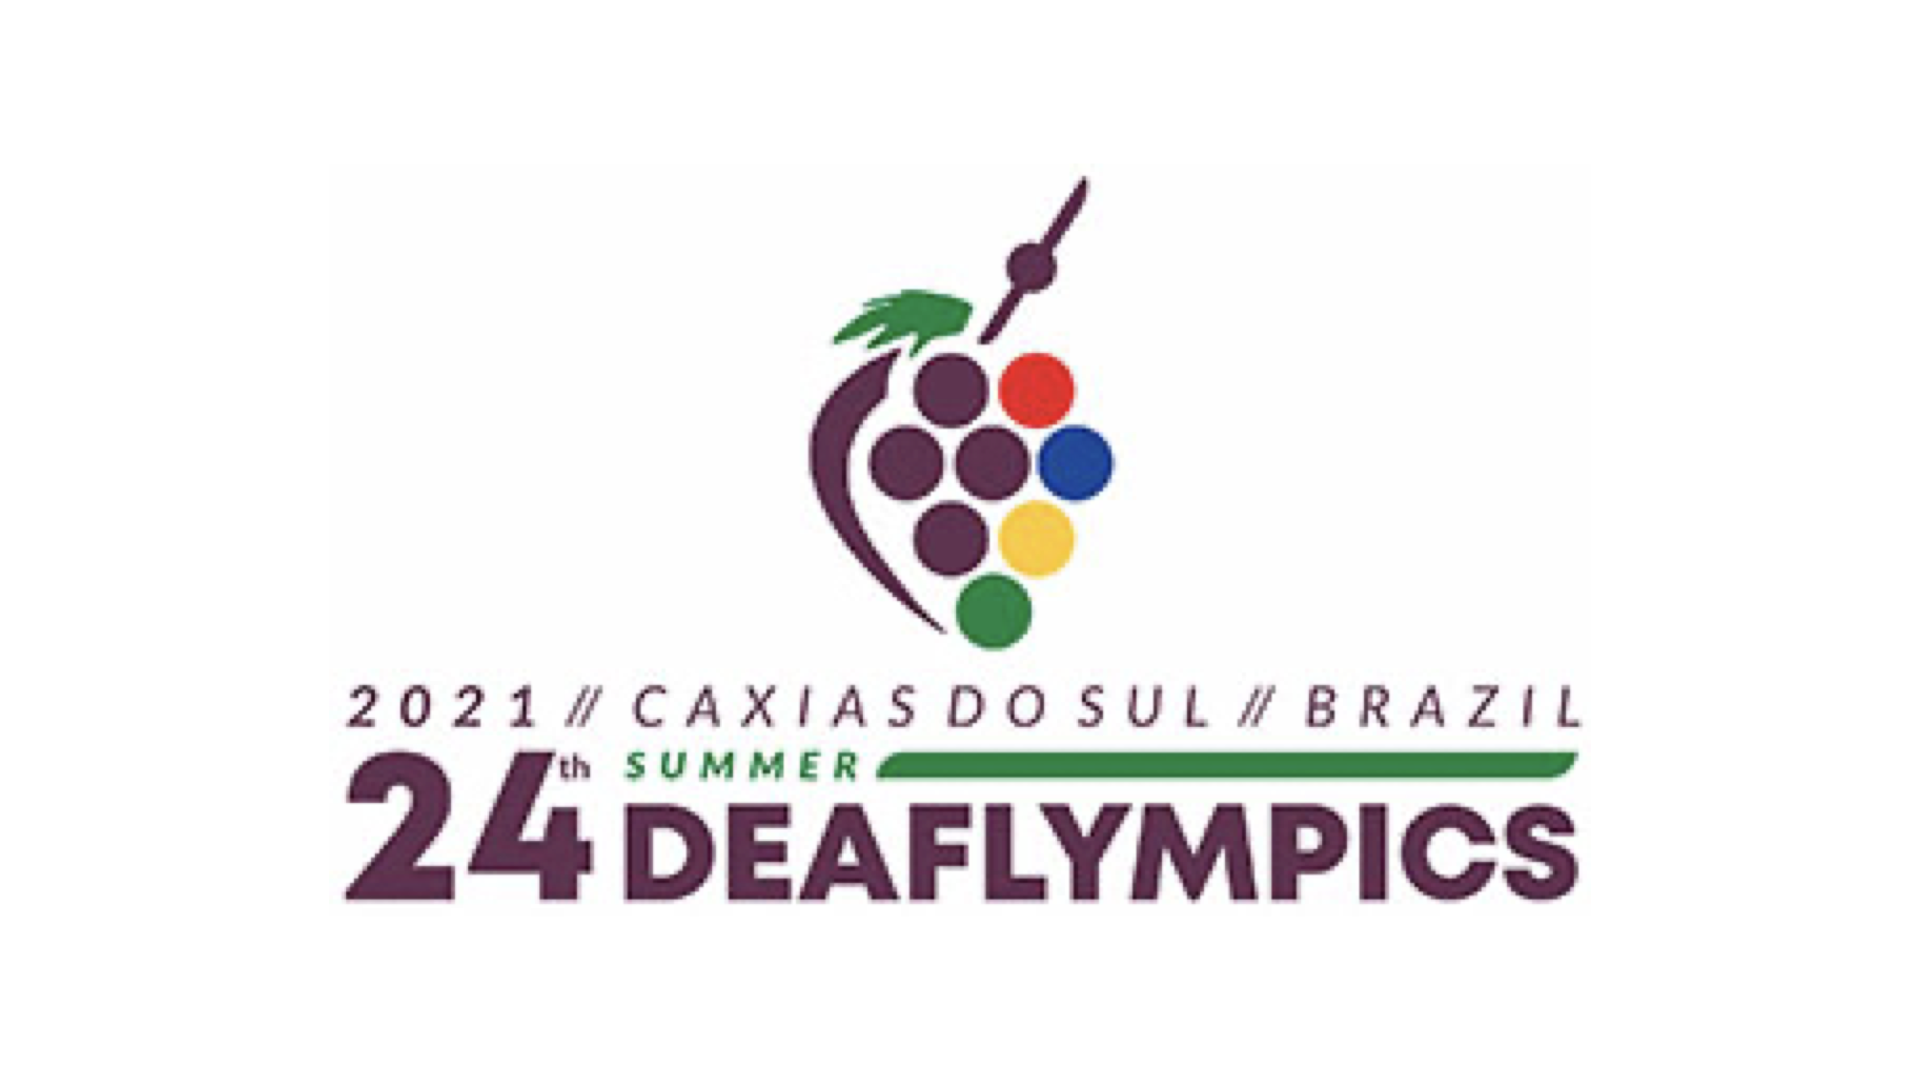 Deaflympics, Olimpiadi dei sordi, a maggio in Brasile. Raduno di preparazione a Macerata per gli azzurri